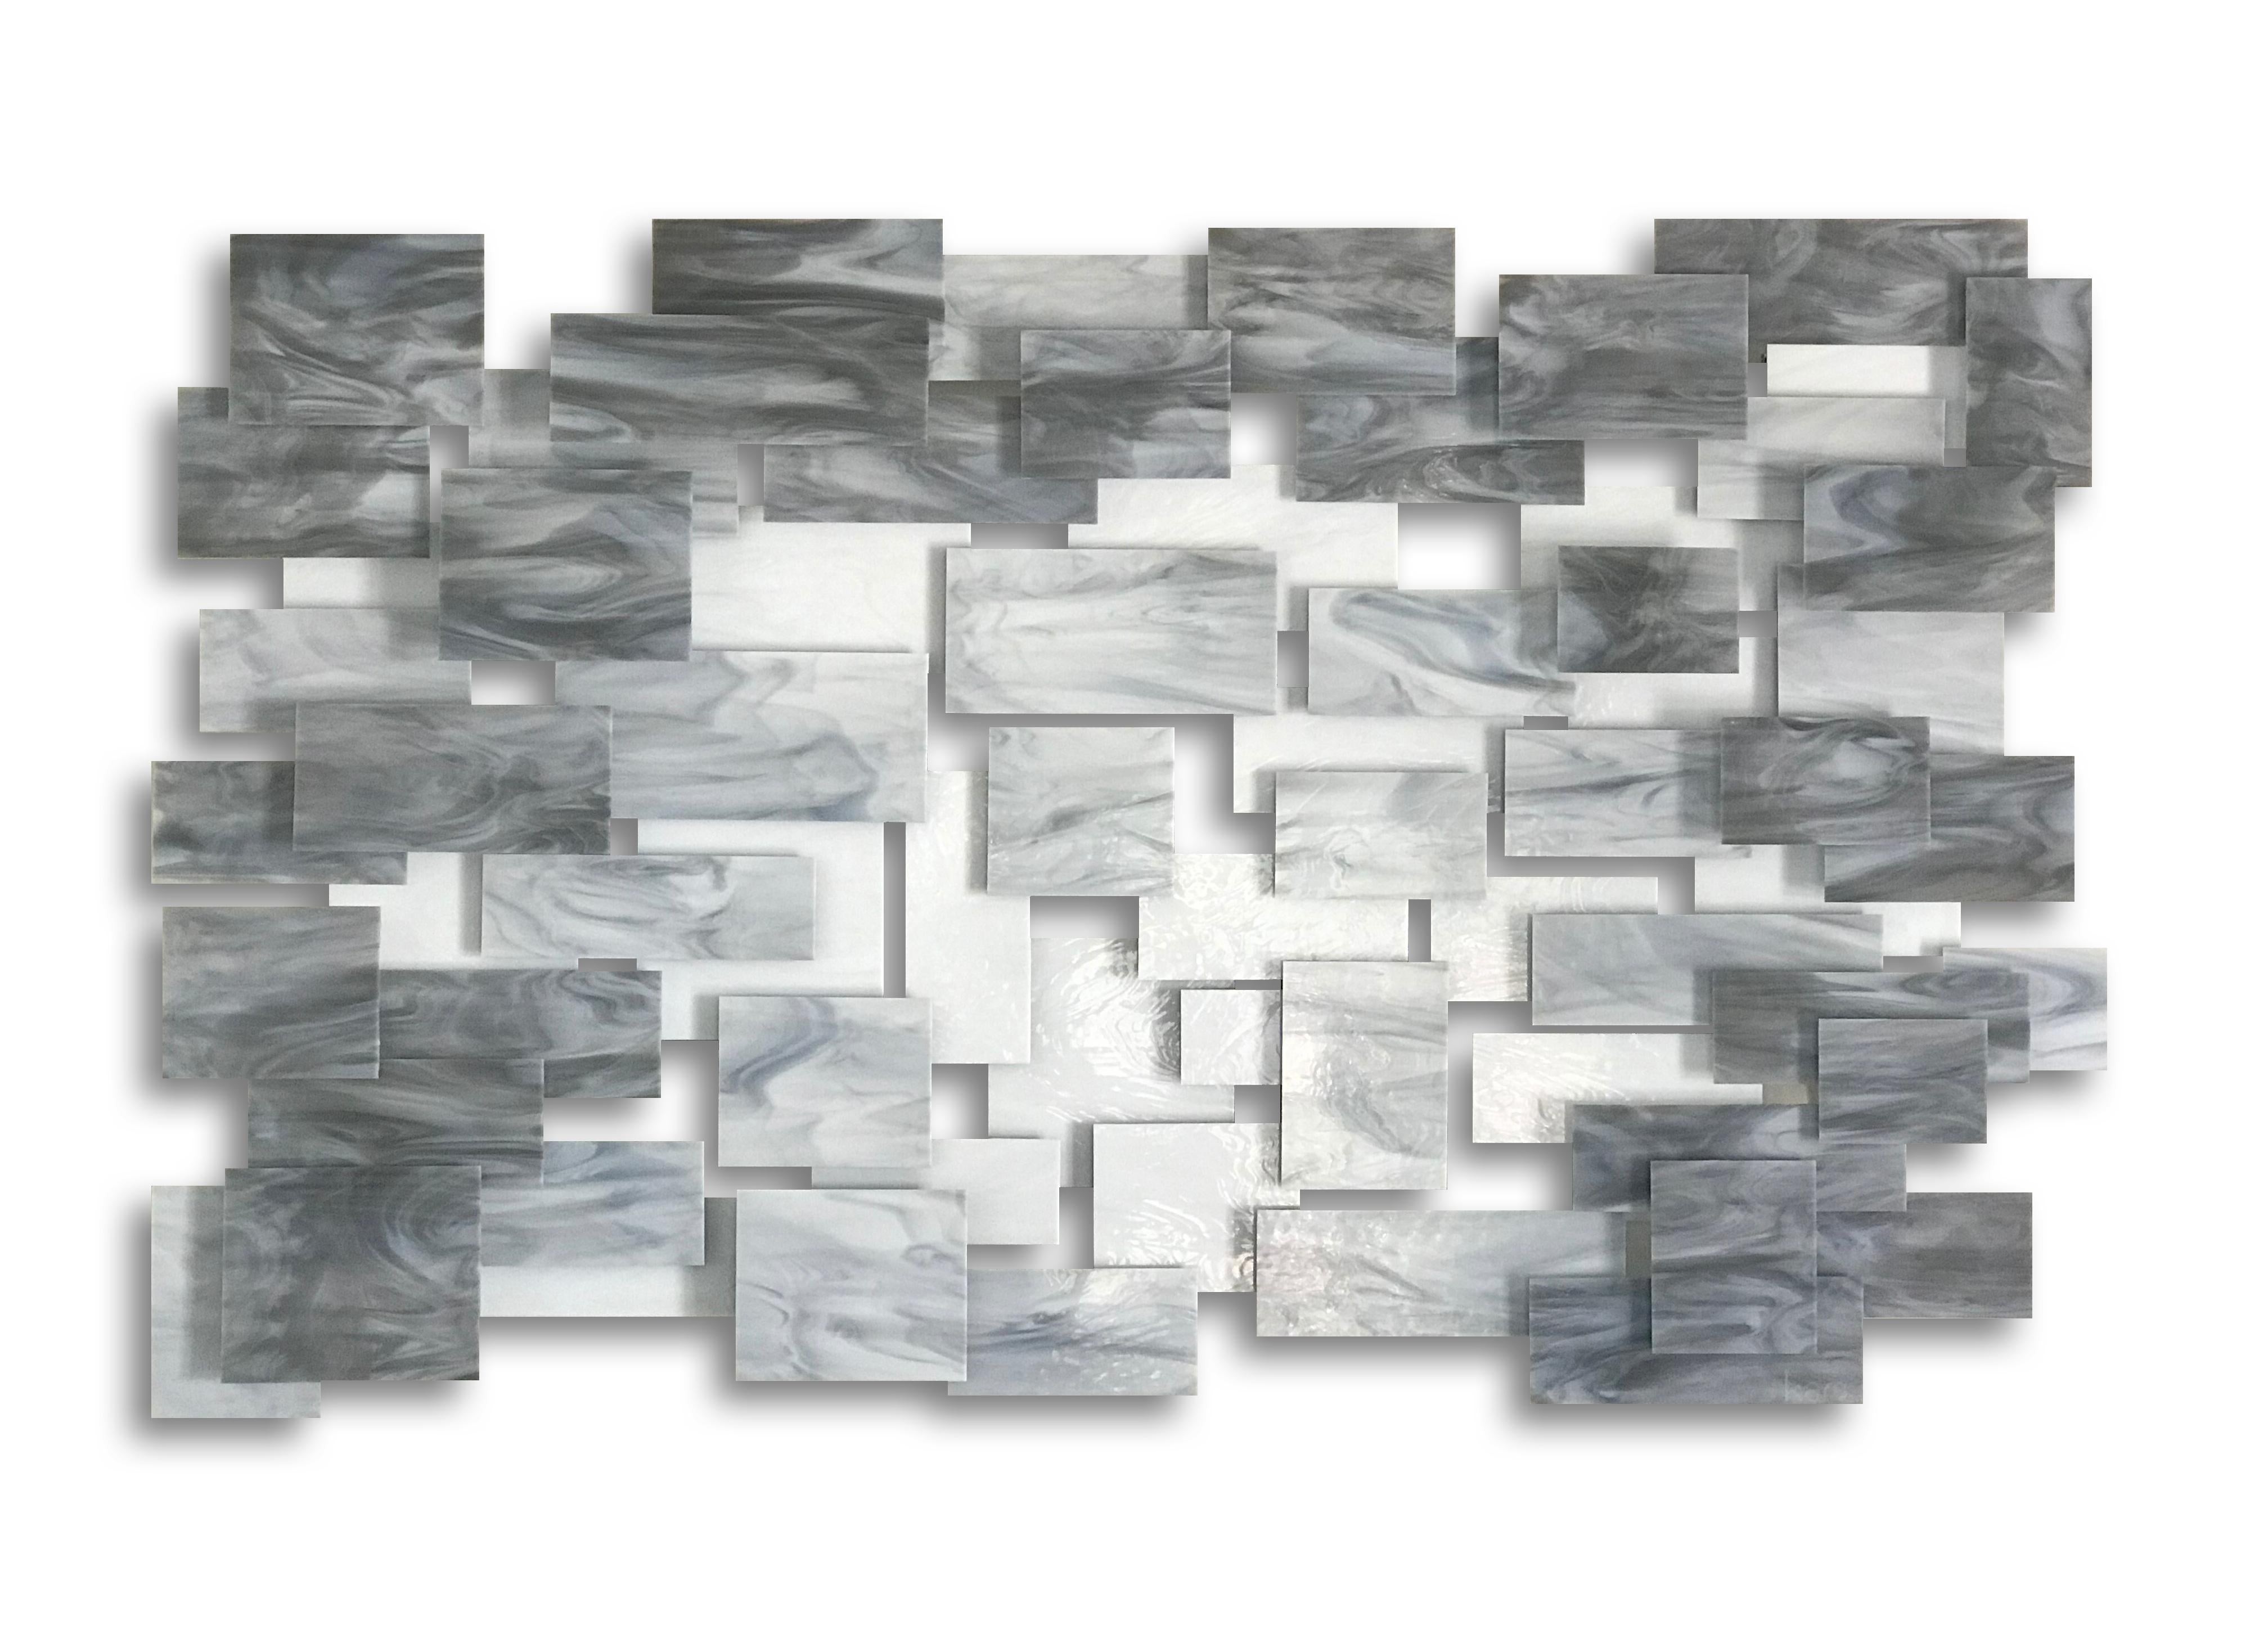 Monochrome, Abstract 3D Original  Glass and Metal Wall Sculpture, modern